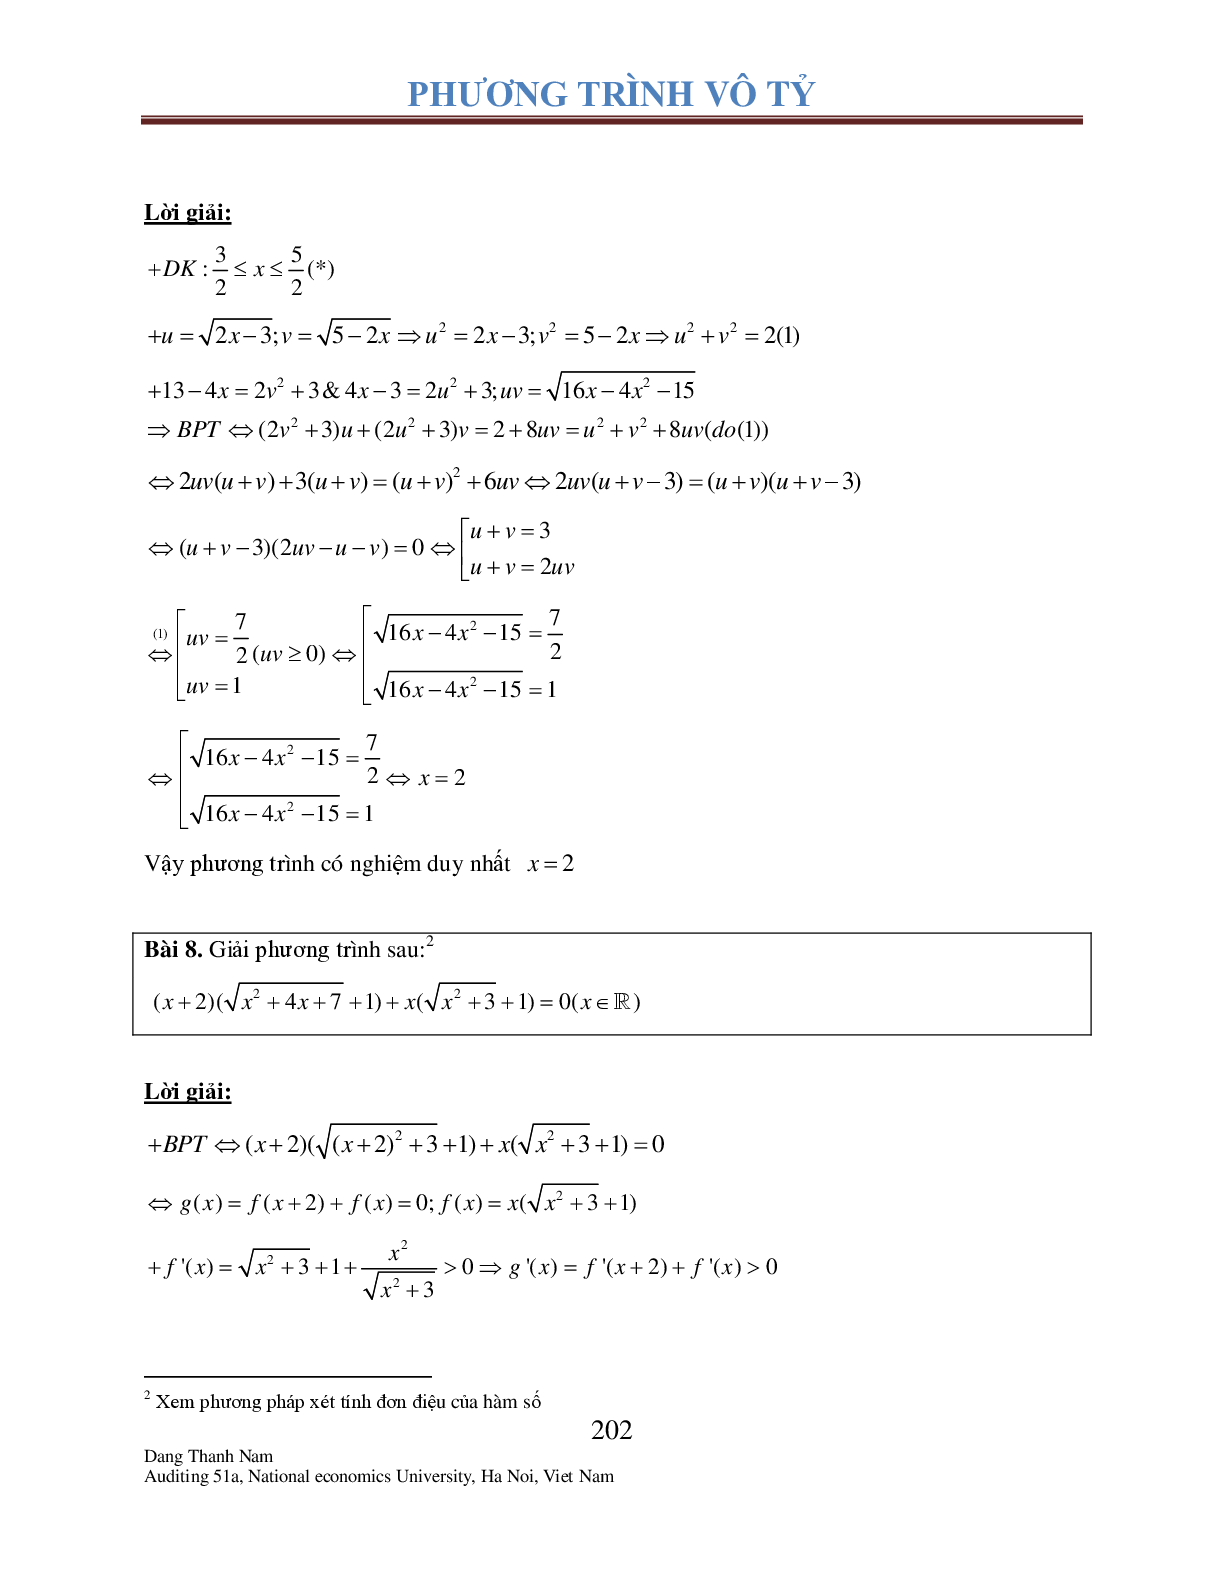 Chuyên đề phương trình Vô tỉ (trang 7)